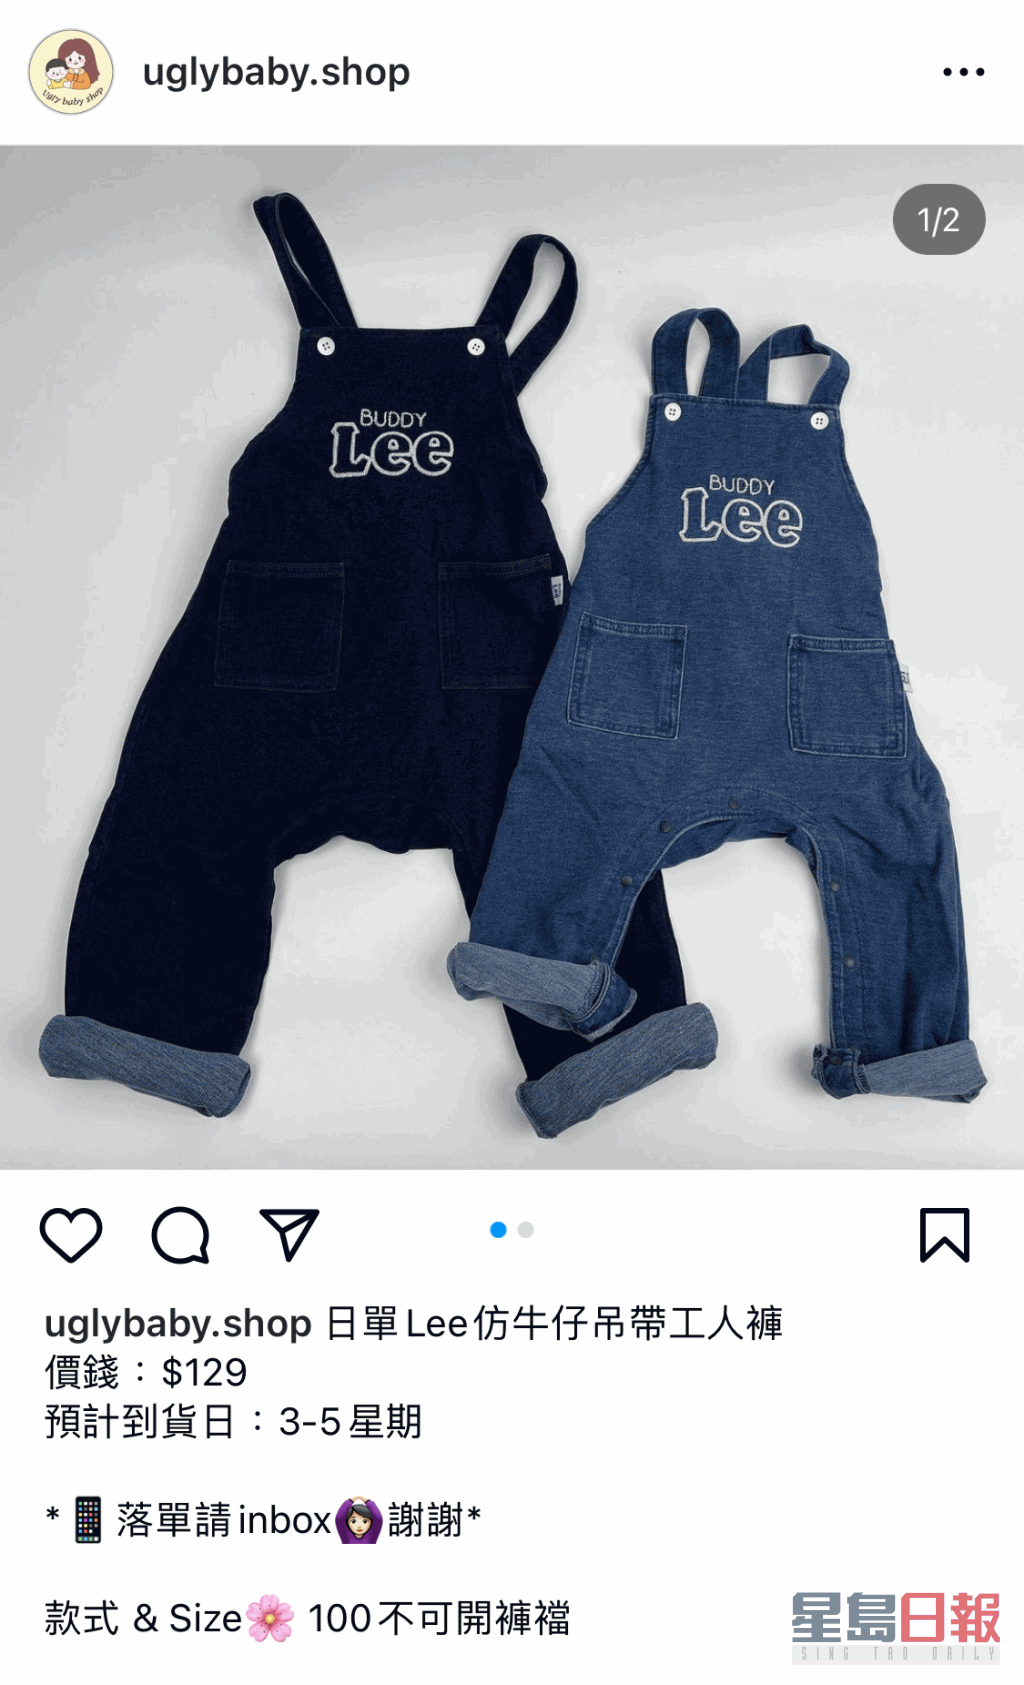 另一件童裝牛件工人褲，涉冒充著名件仔品牌Lee。